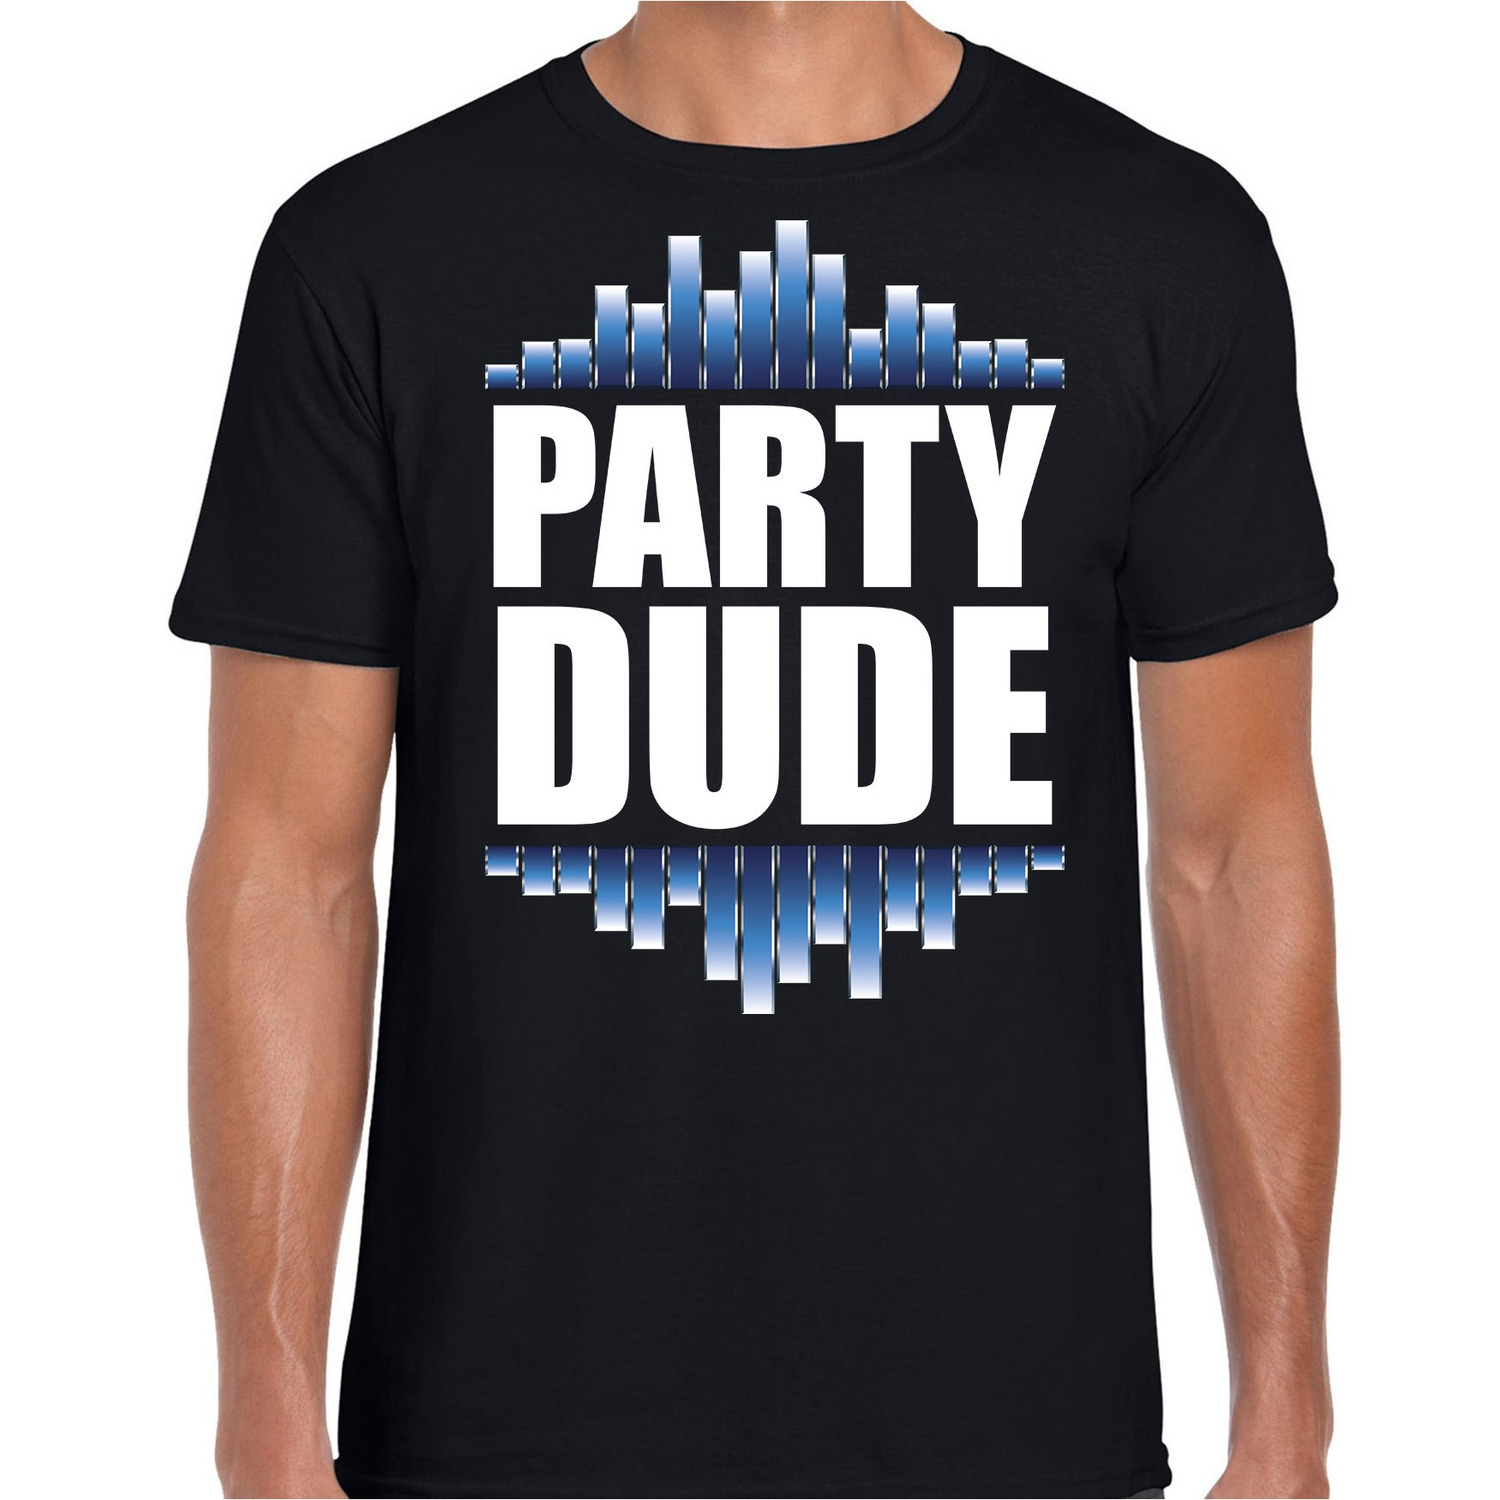 Party dude fun tekst t shirt zwart heren fun tekst disco feest t shirt